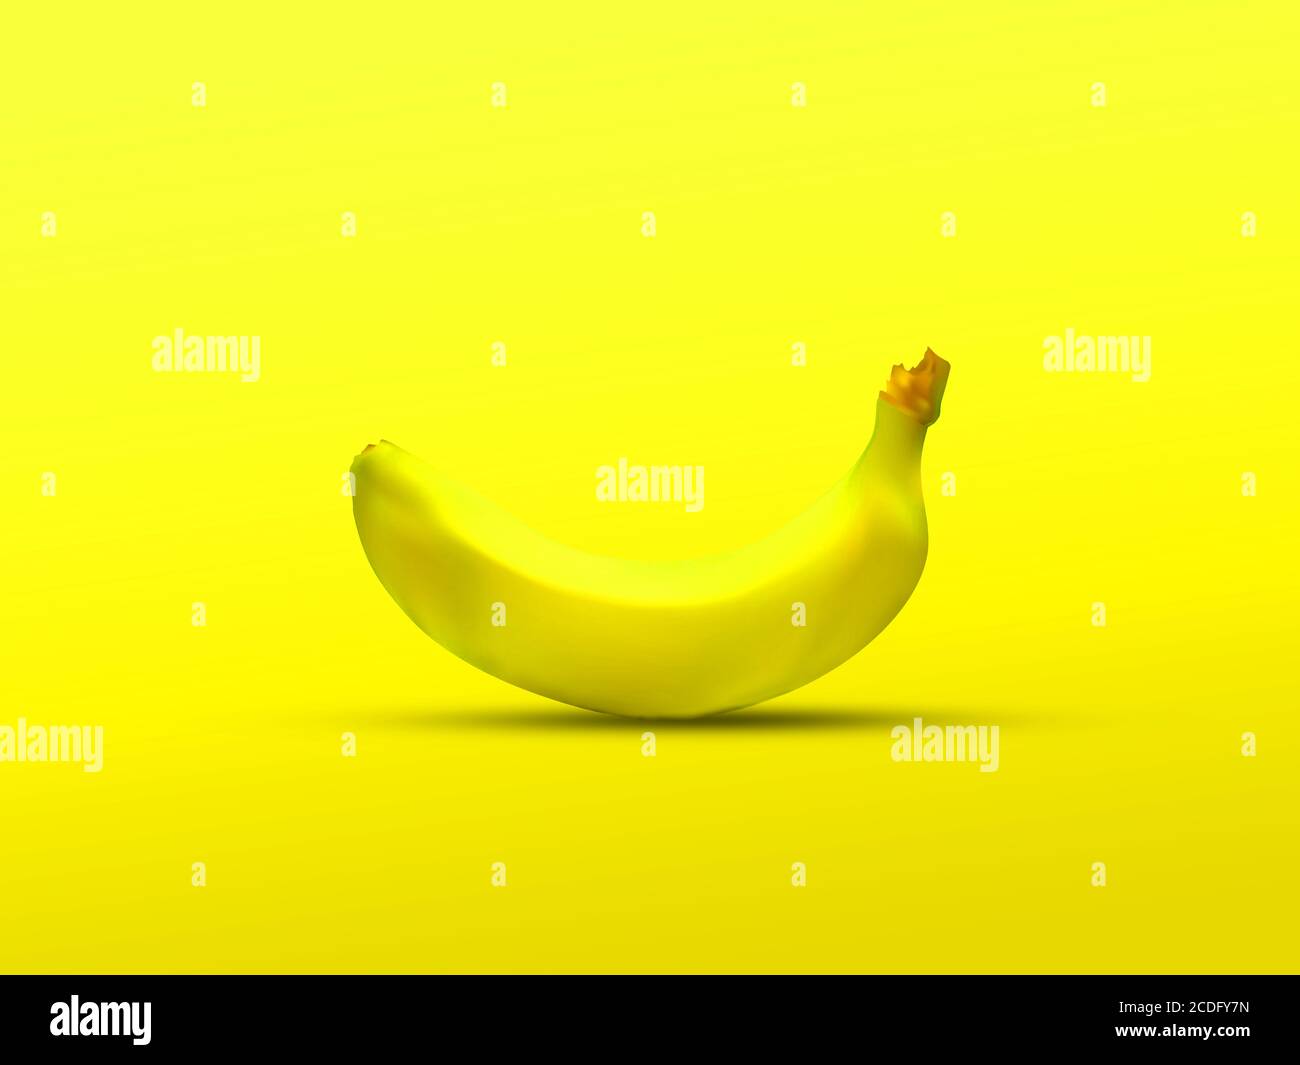 Una banana gialla isolata su sfondo giallo : studio di colore chiaro: Una banana tridementional - visualizzazione 3D Foto Stock